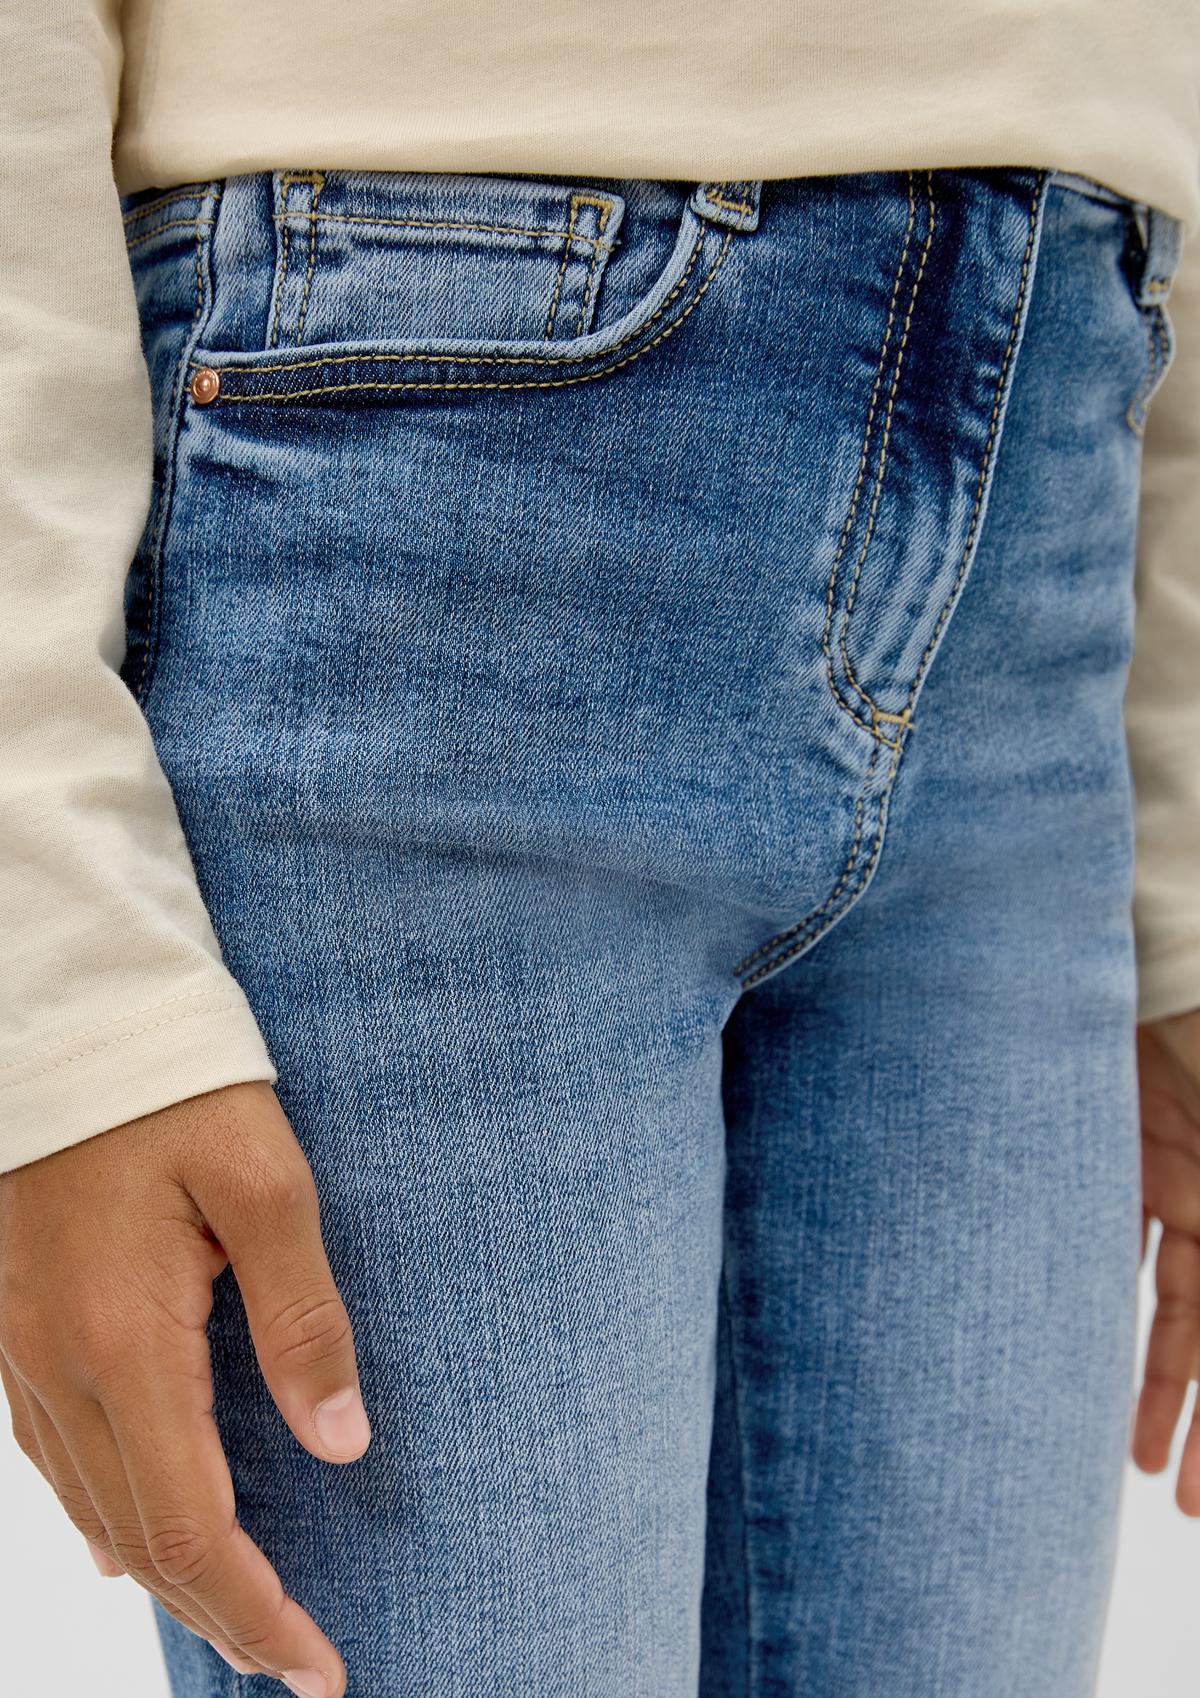 s.Oliver Ankle-Jeans Suri / Regular Fit / High Rise / Slim Leg